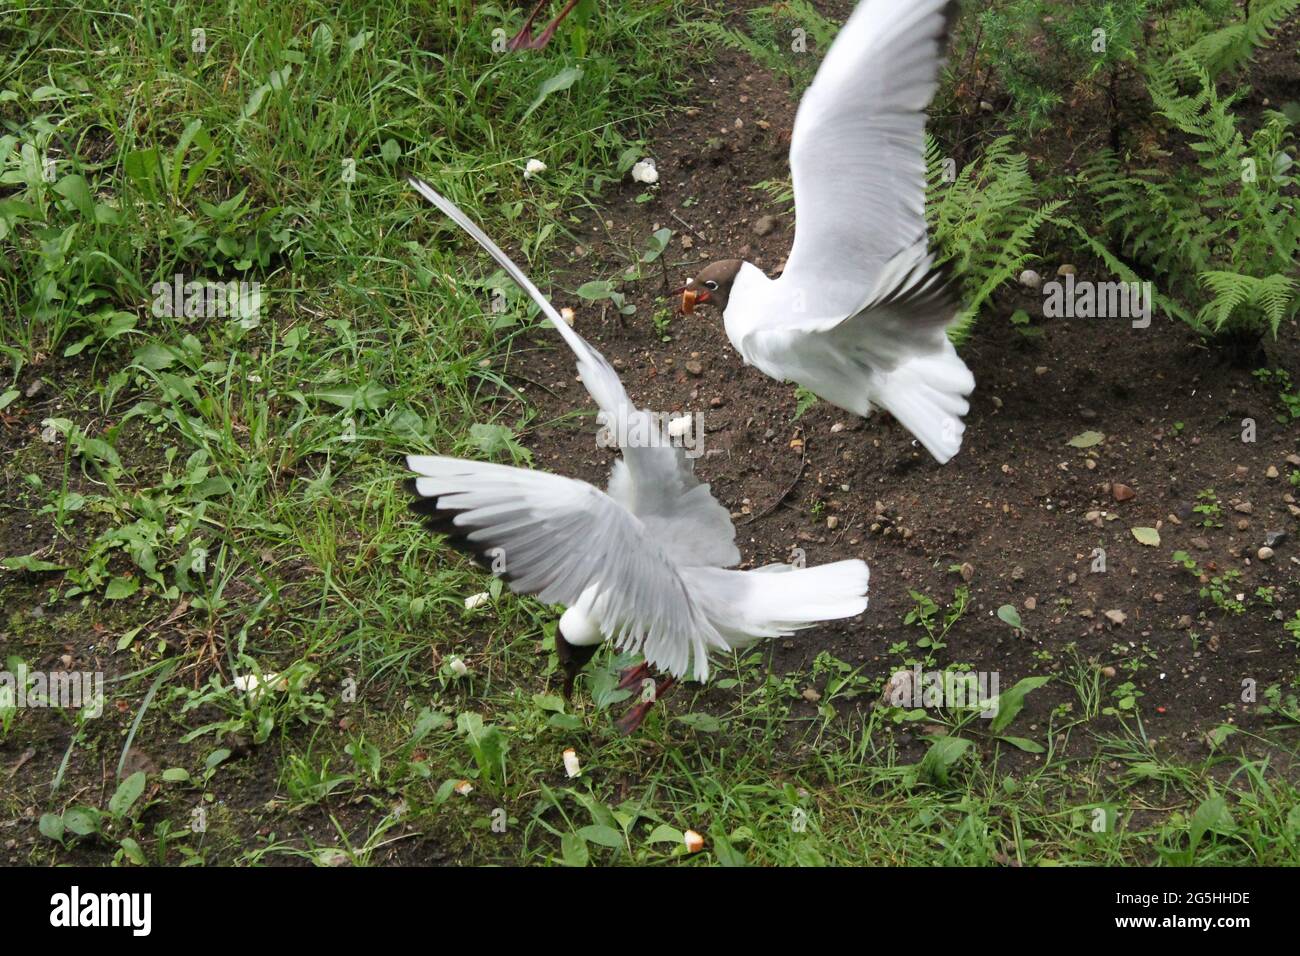 las aves blancas de la gaviota juegan en el verde parque de verano Foto de stock